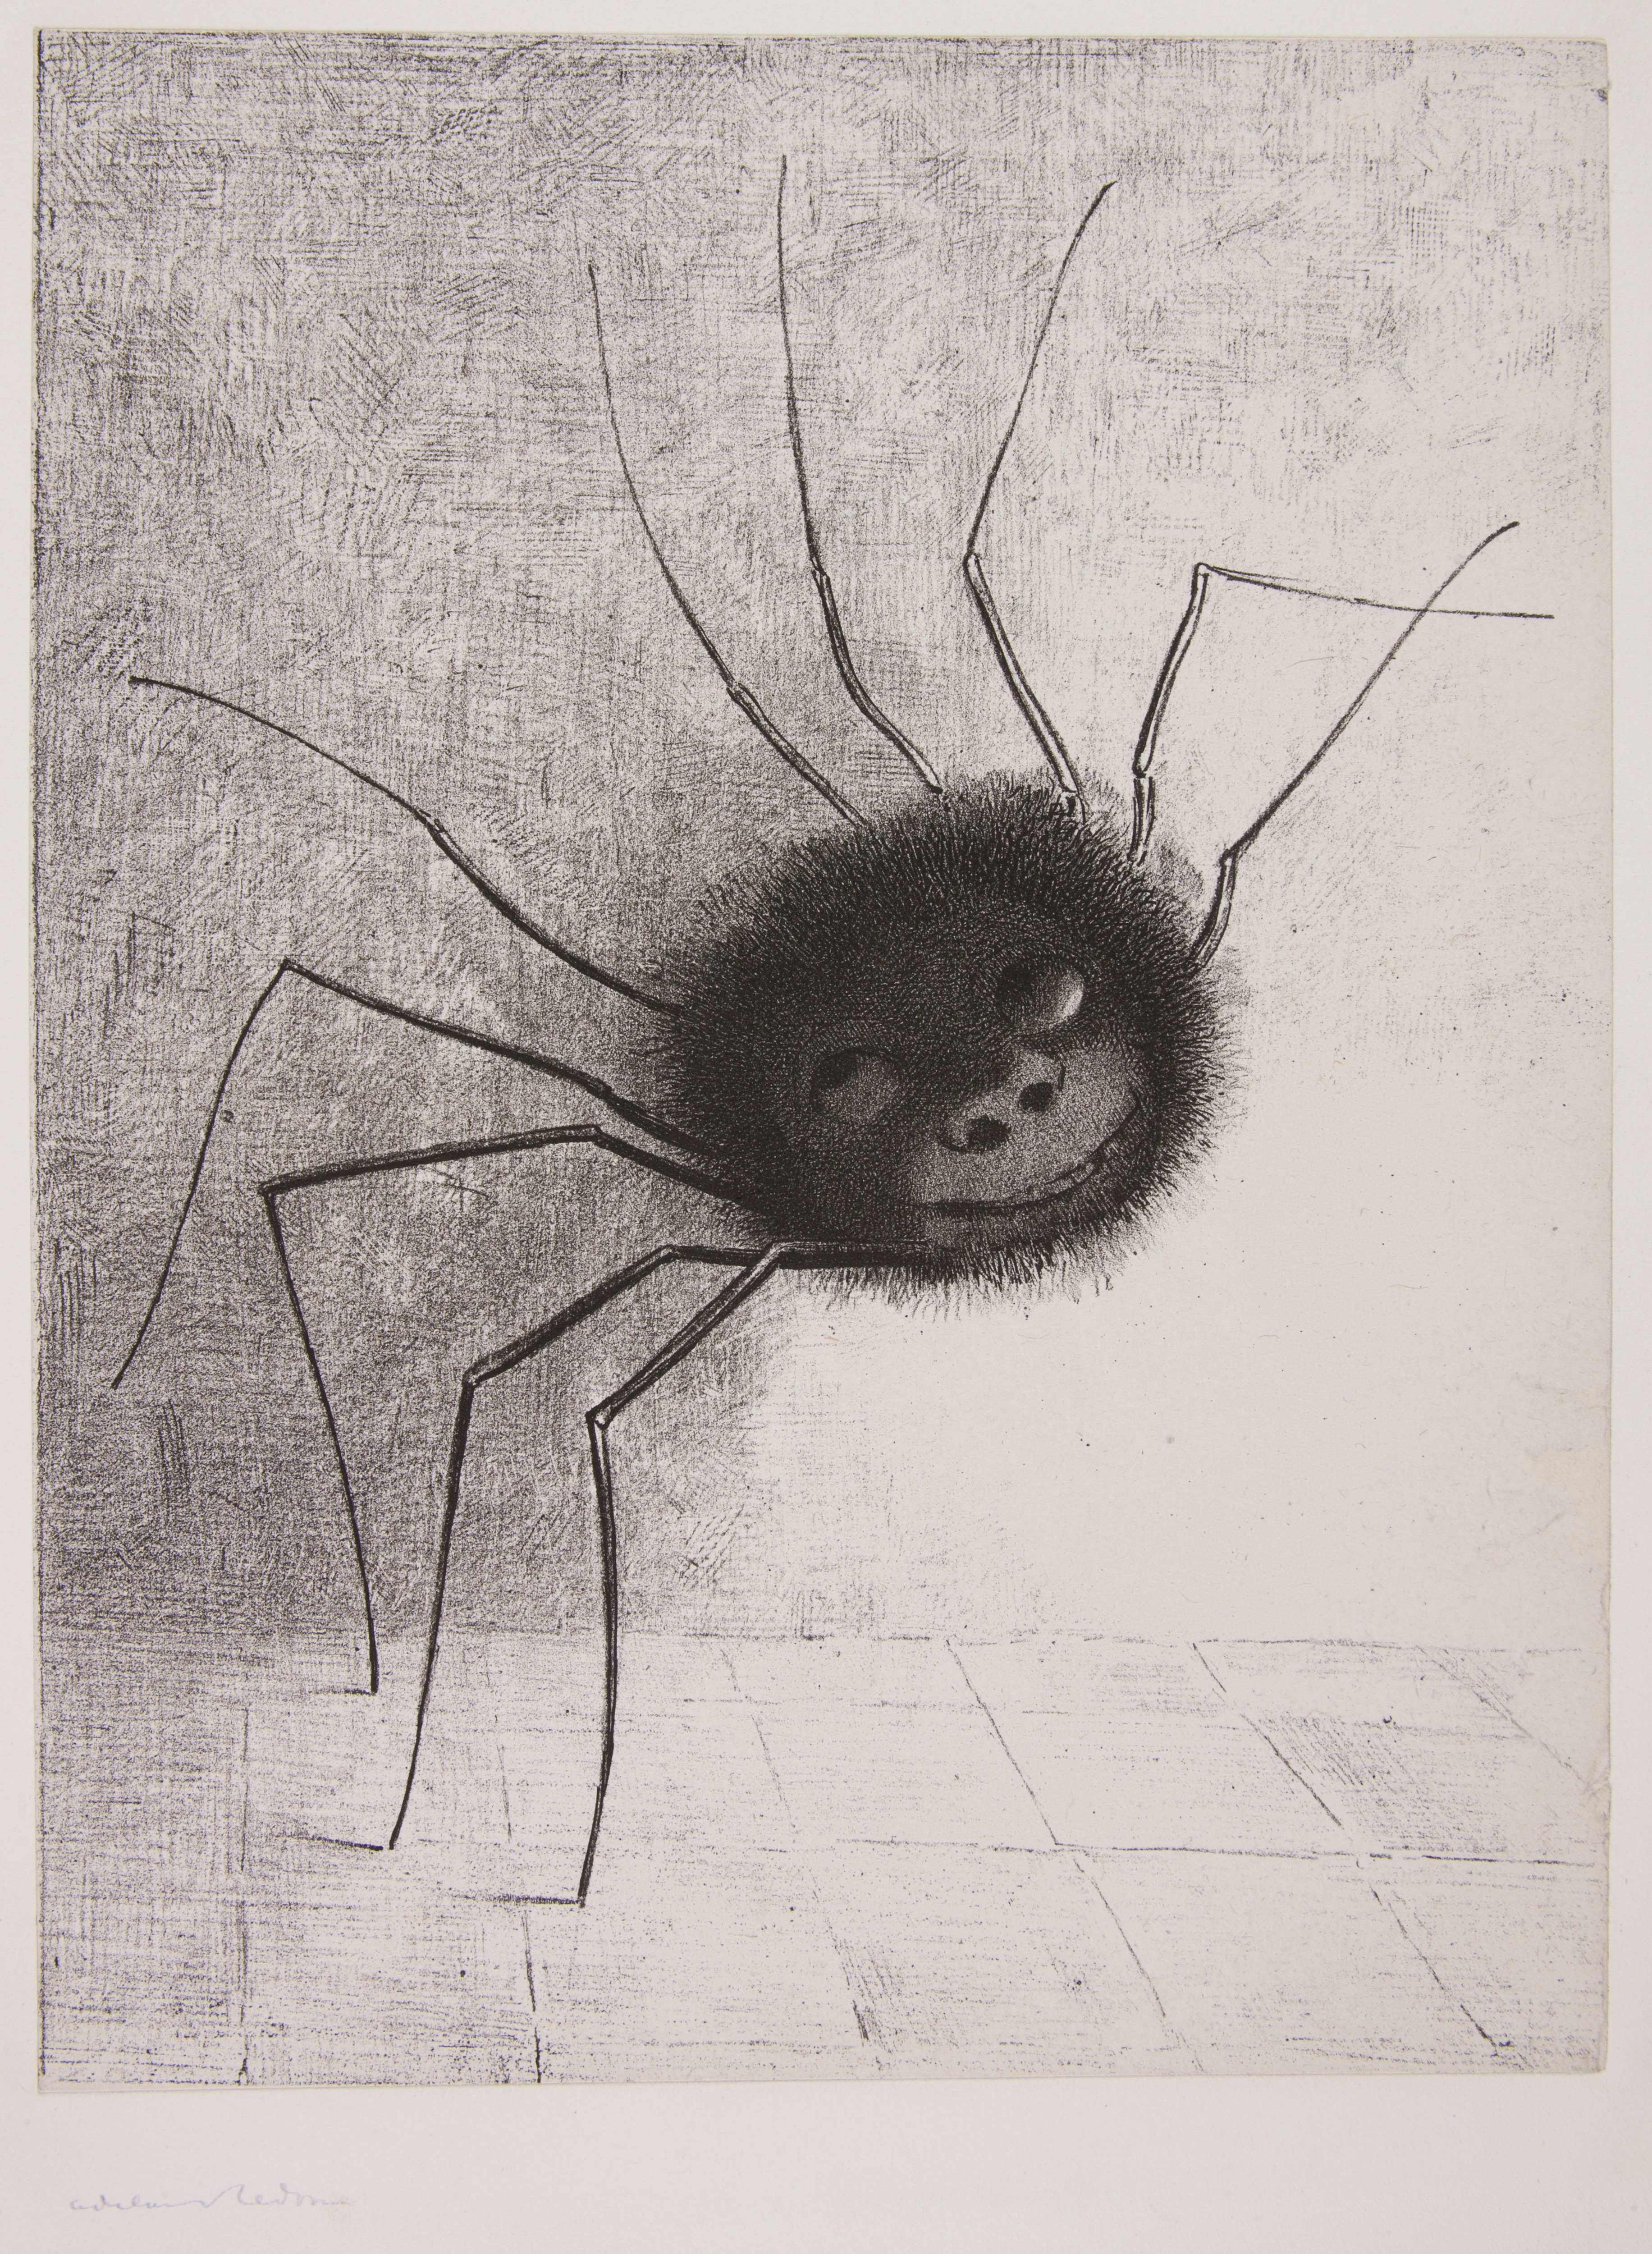 Örümcek by Odilon Redon - 1887 - - 